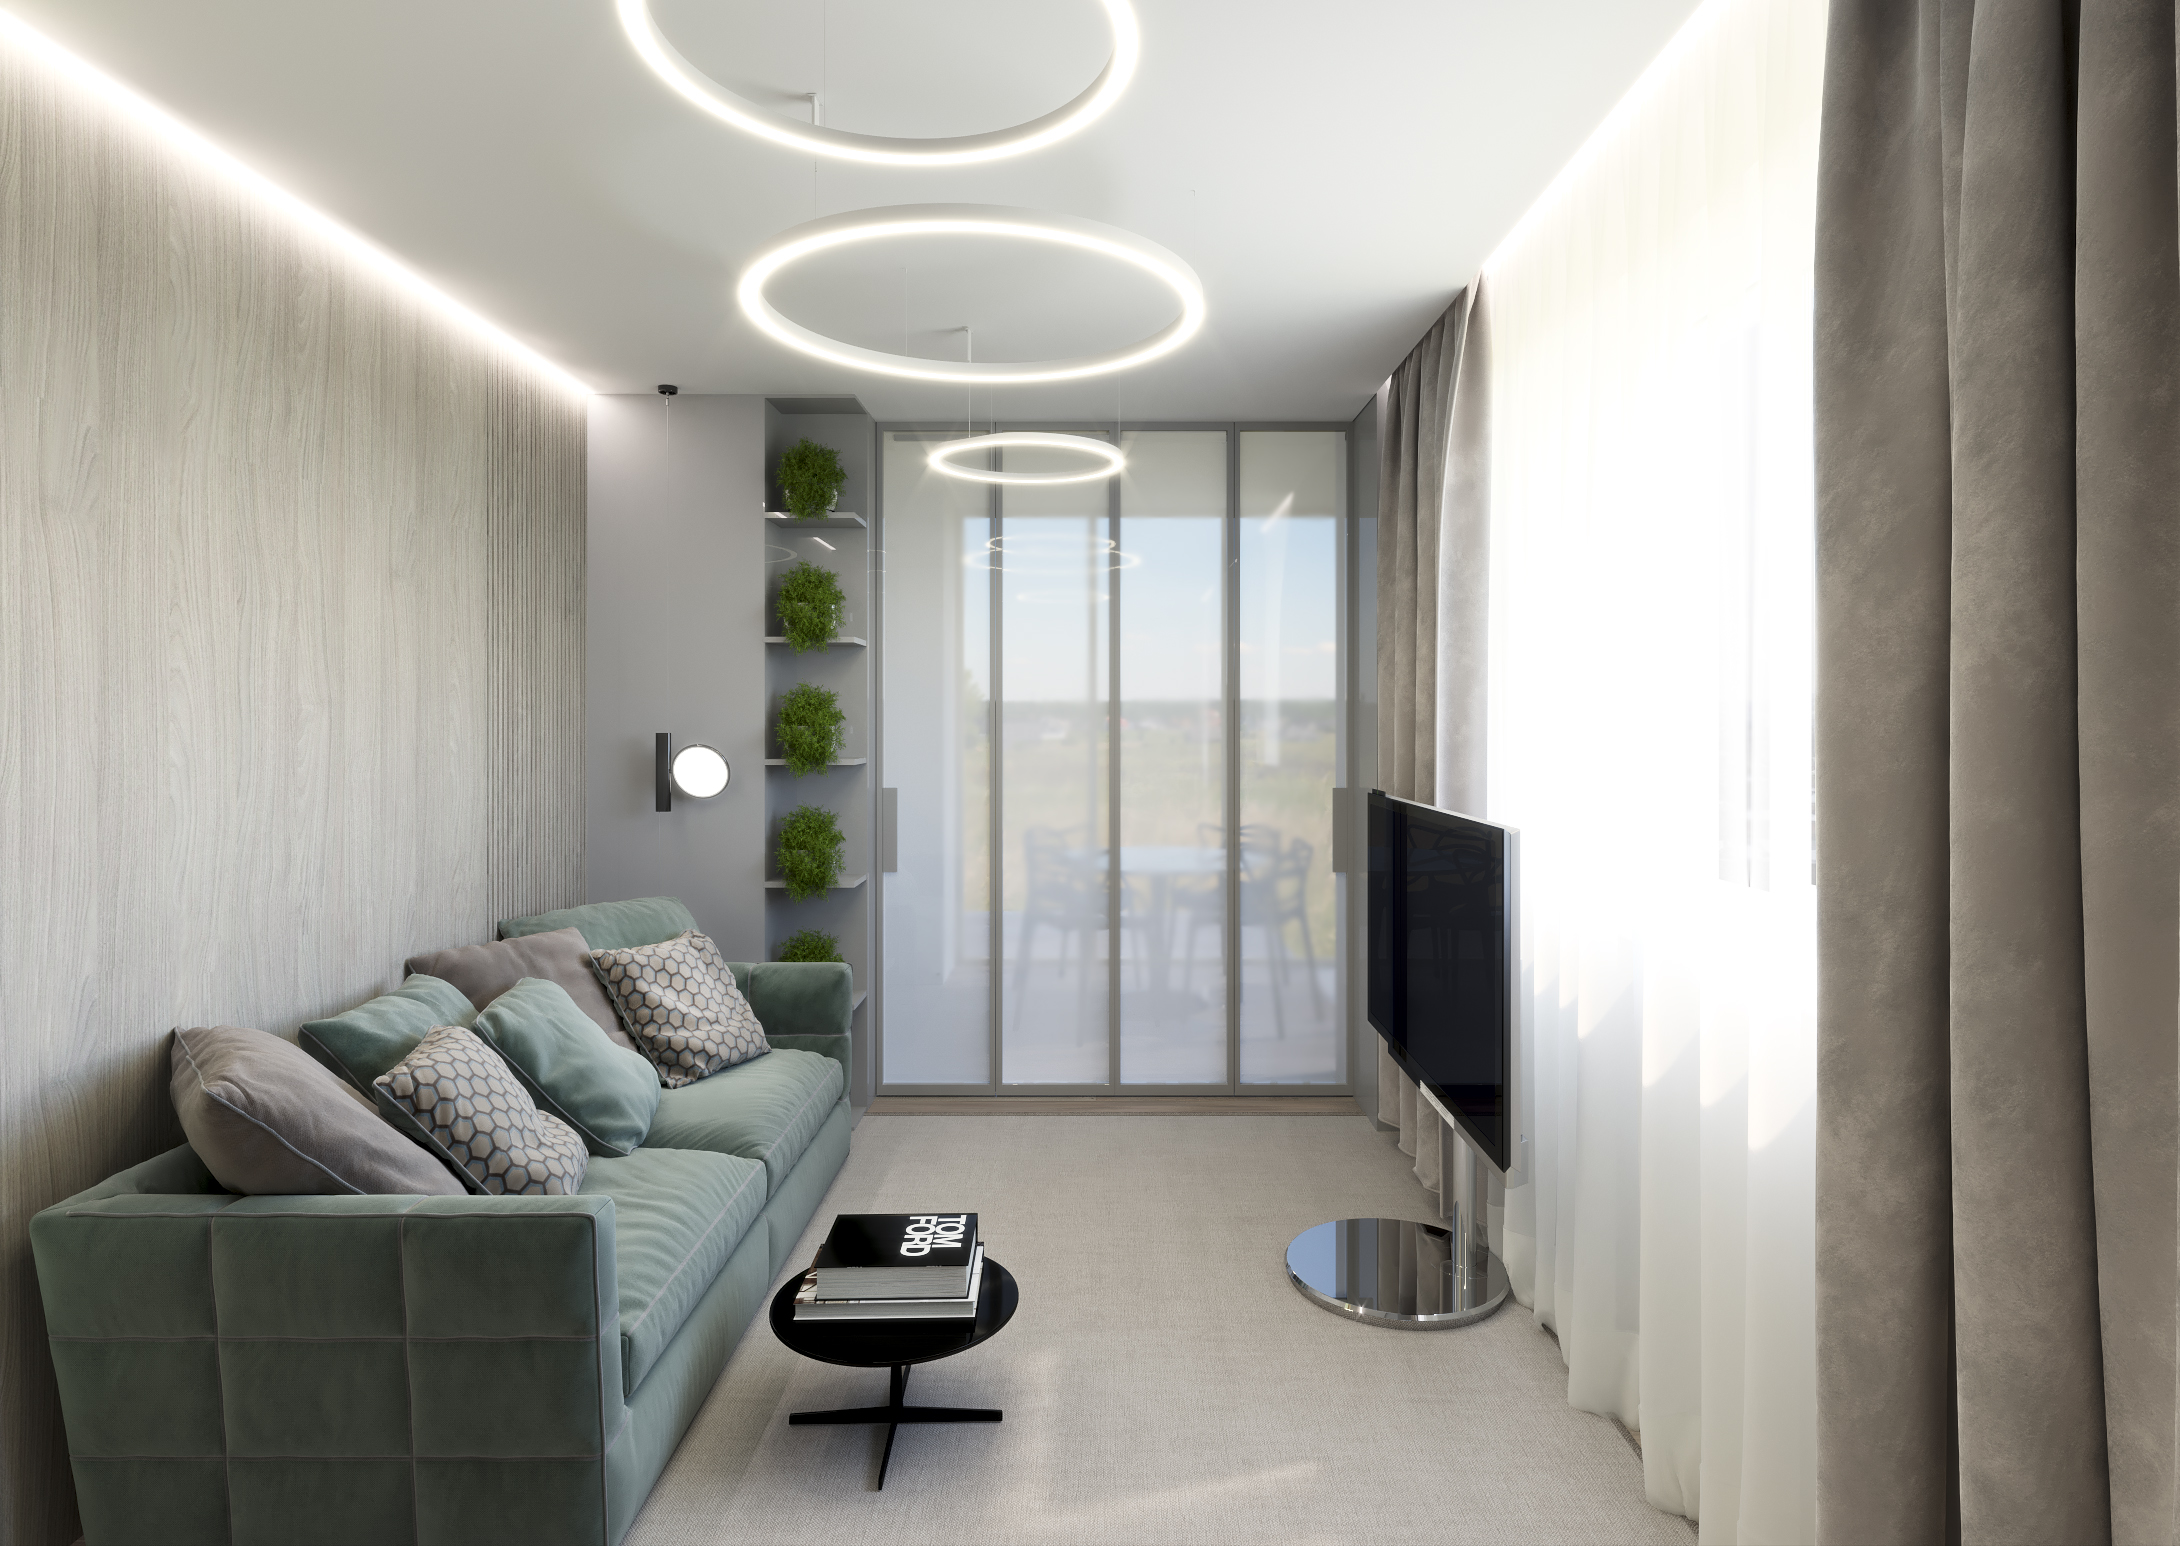 Интерьер квартиры в светлых тонах фото в современном стиле двухкомнатные квартиры